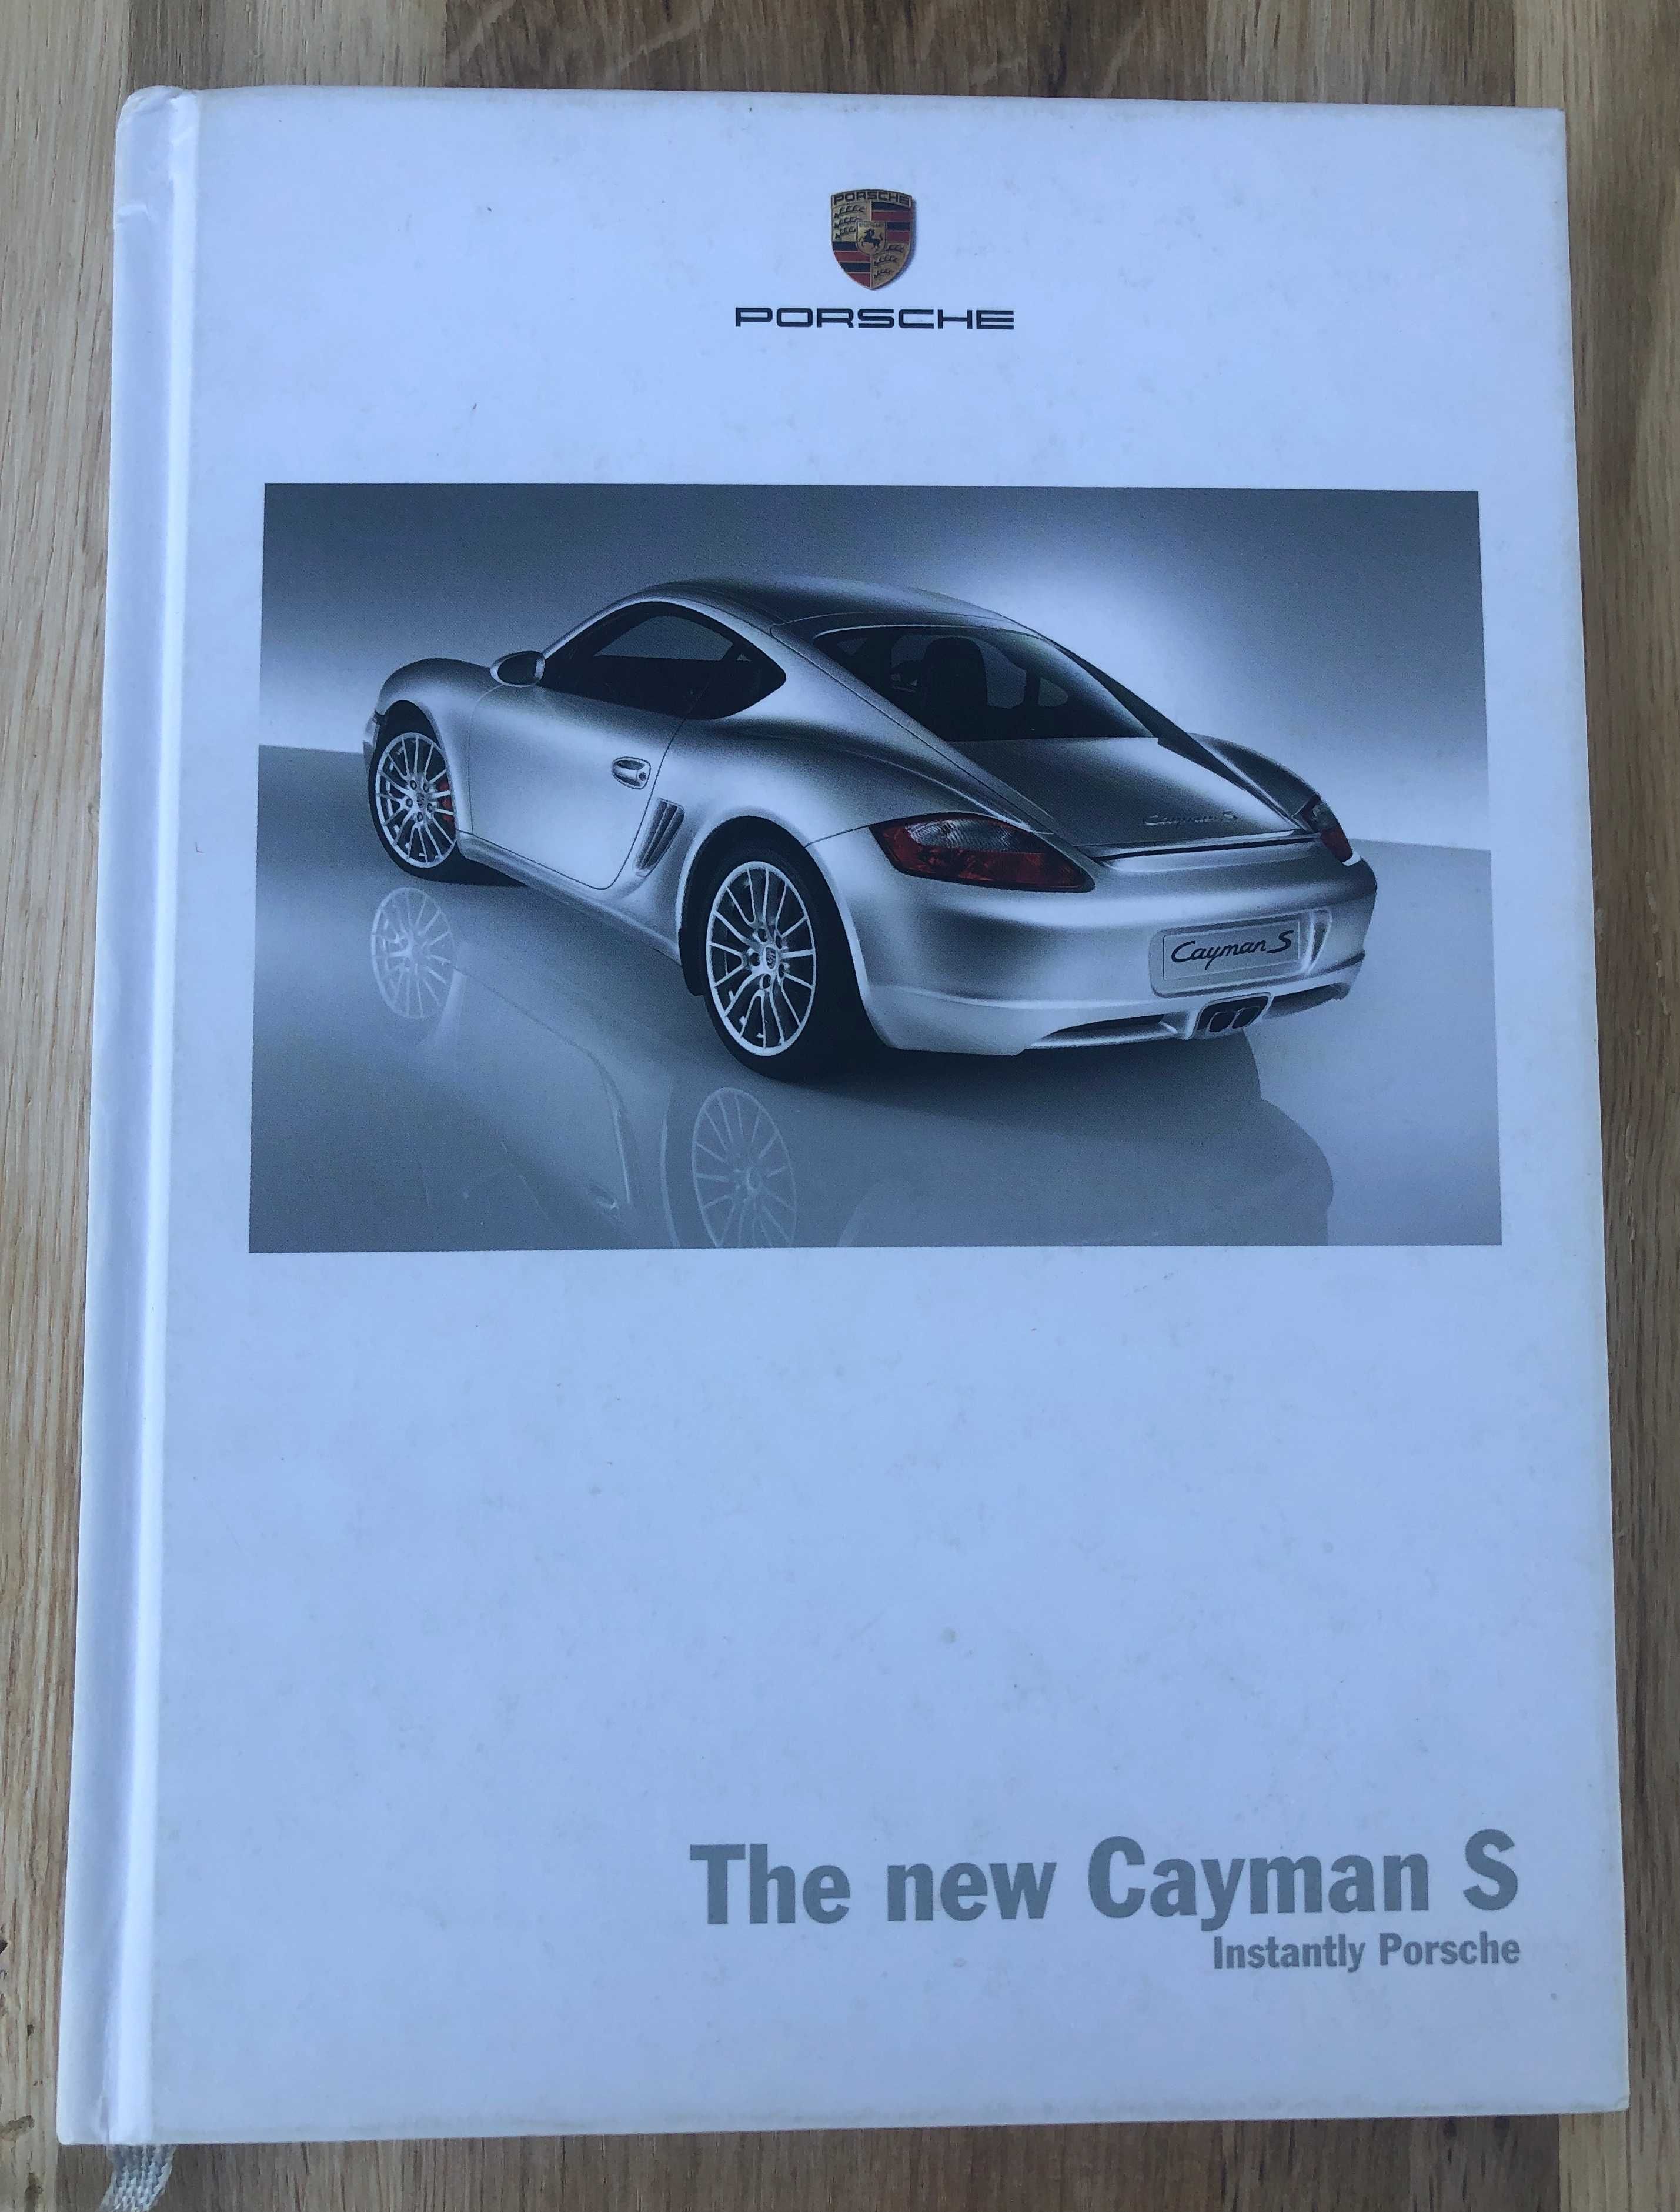 Porsche Cayman S 2006 instrukcja obsługi książka